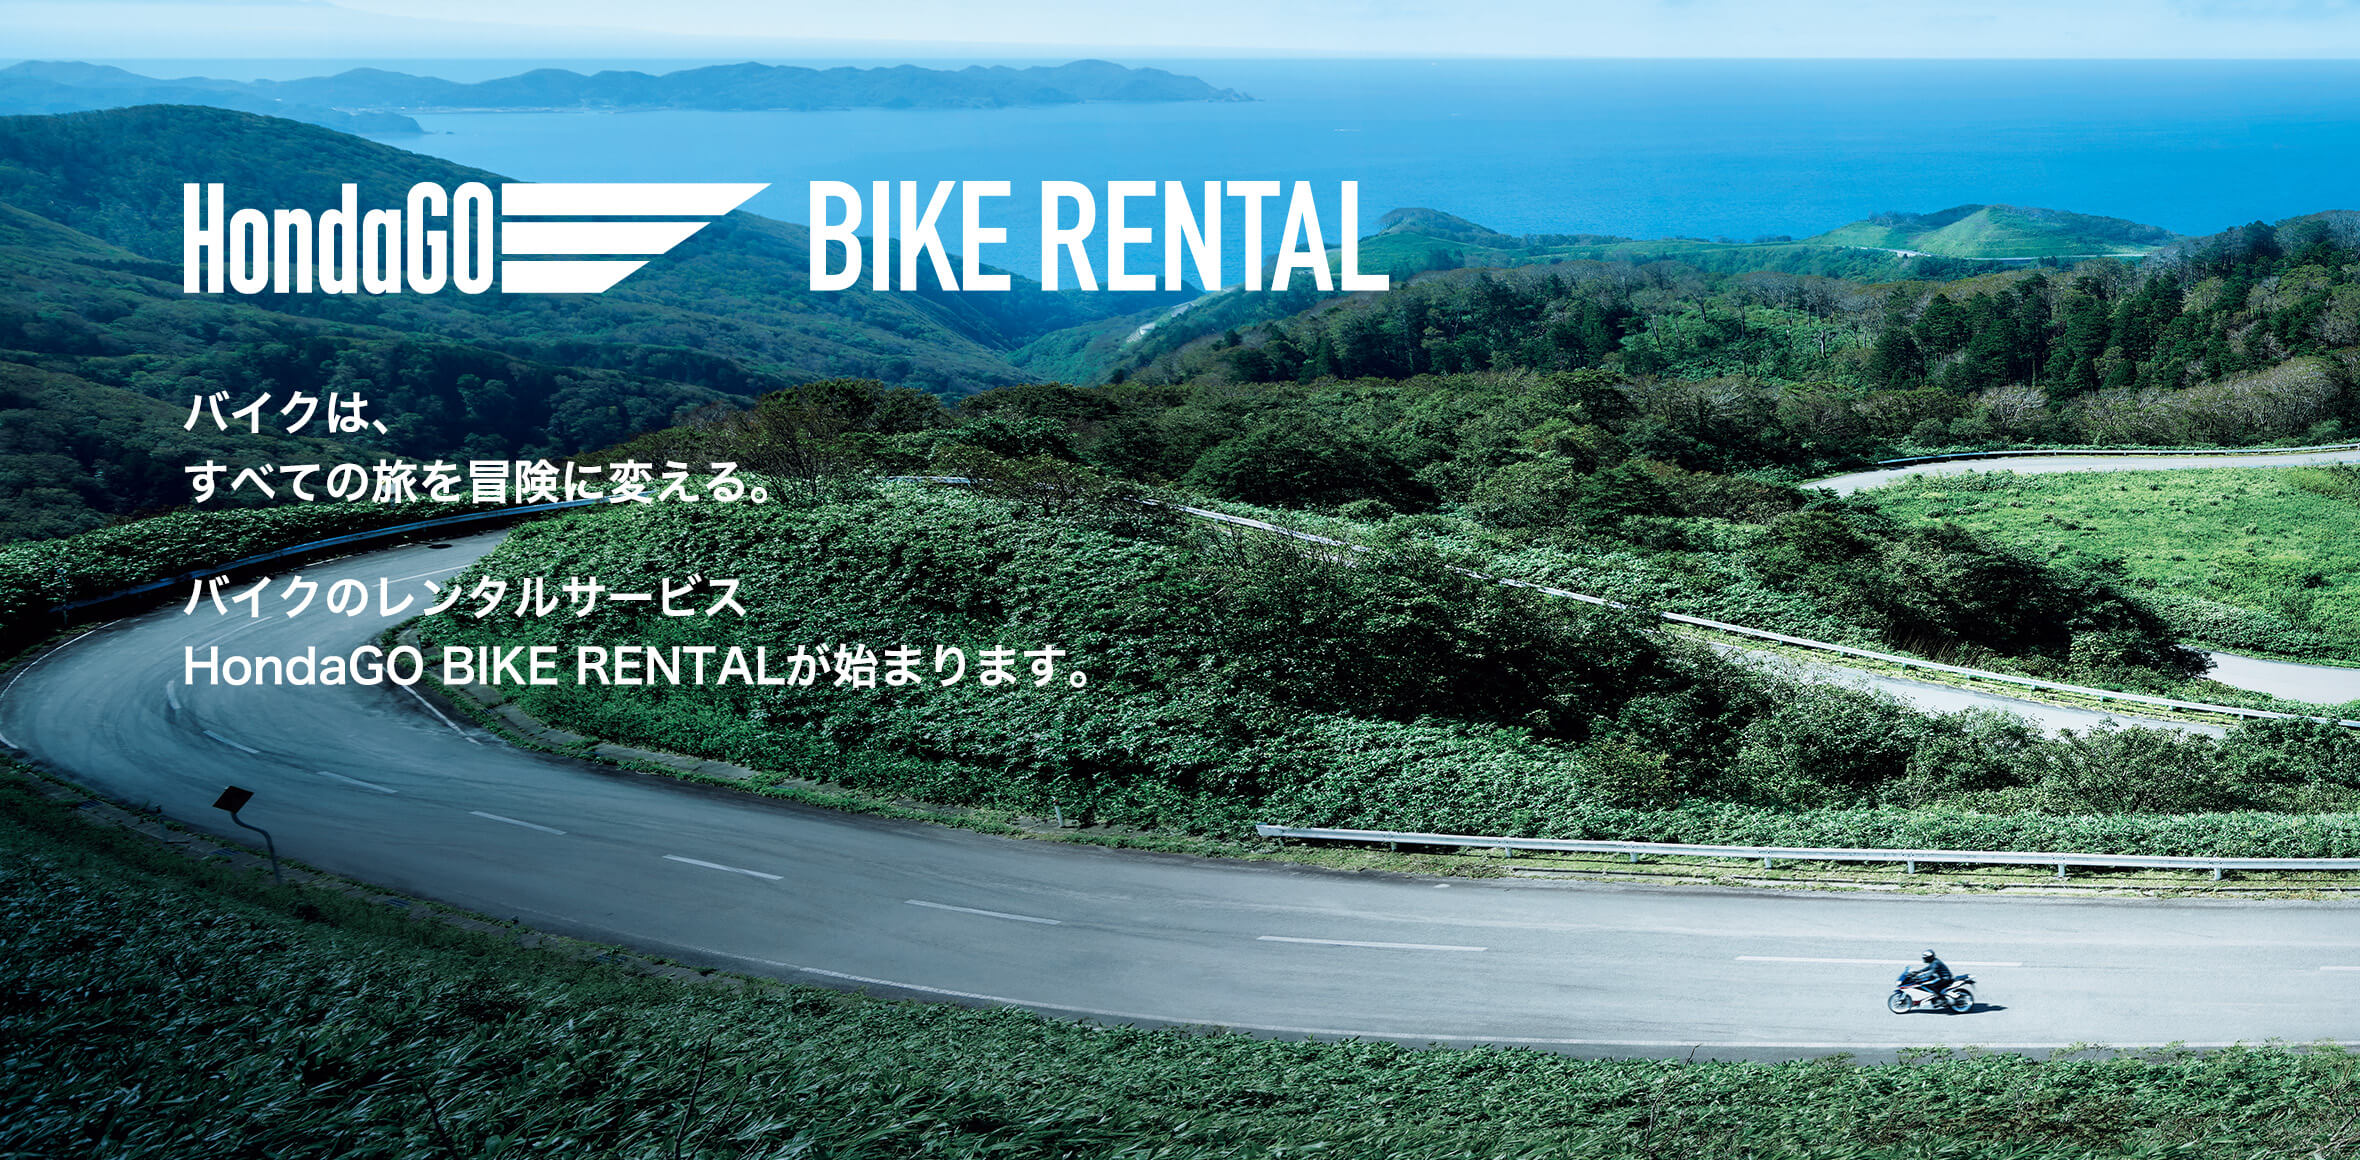 バイクレンタルならホンダ Hondago Bike Rental